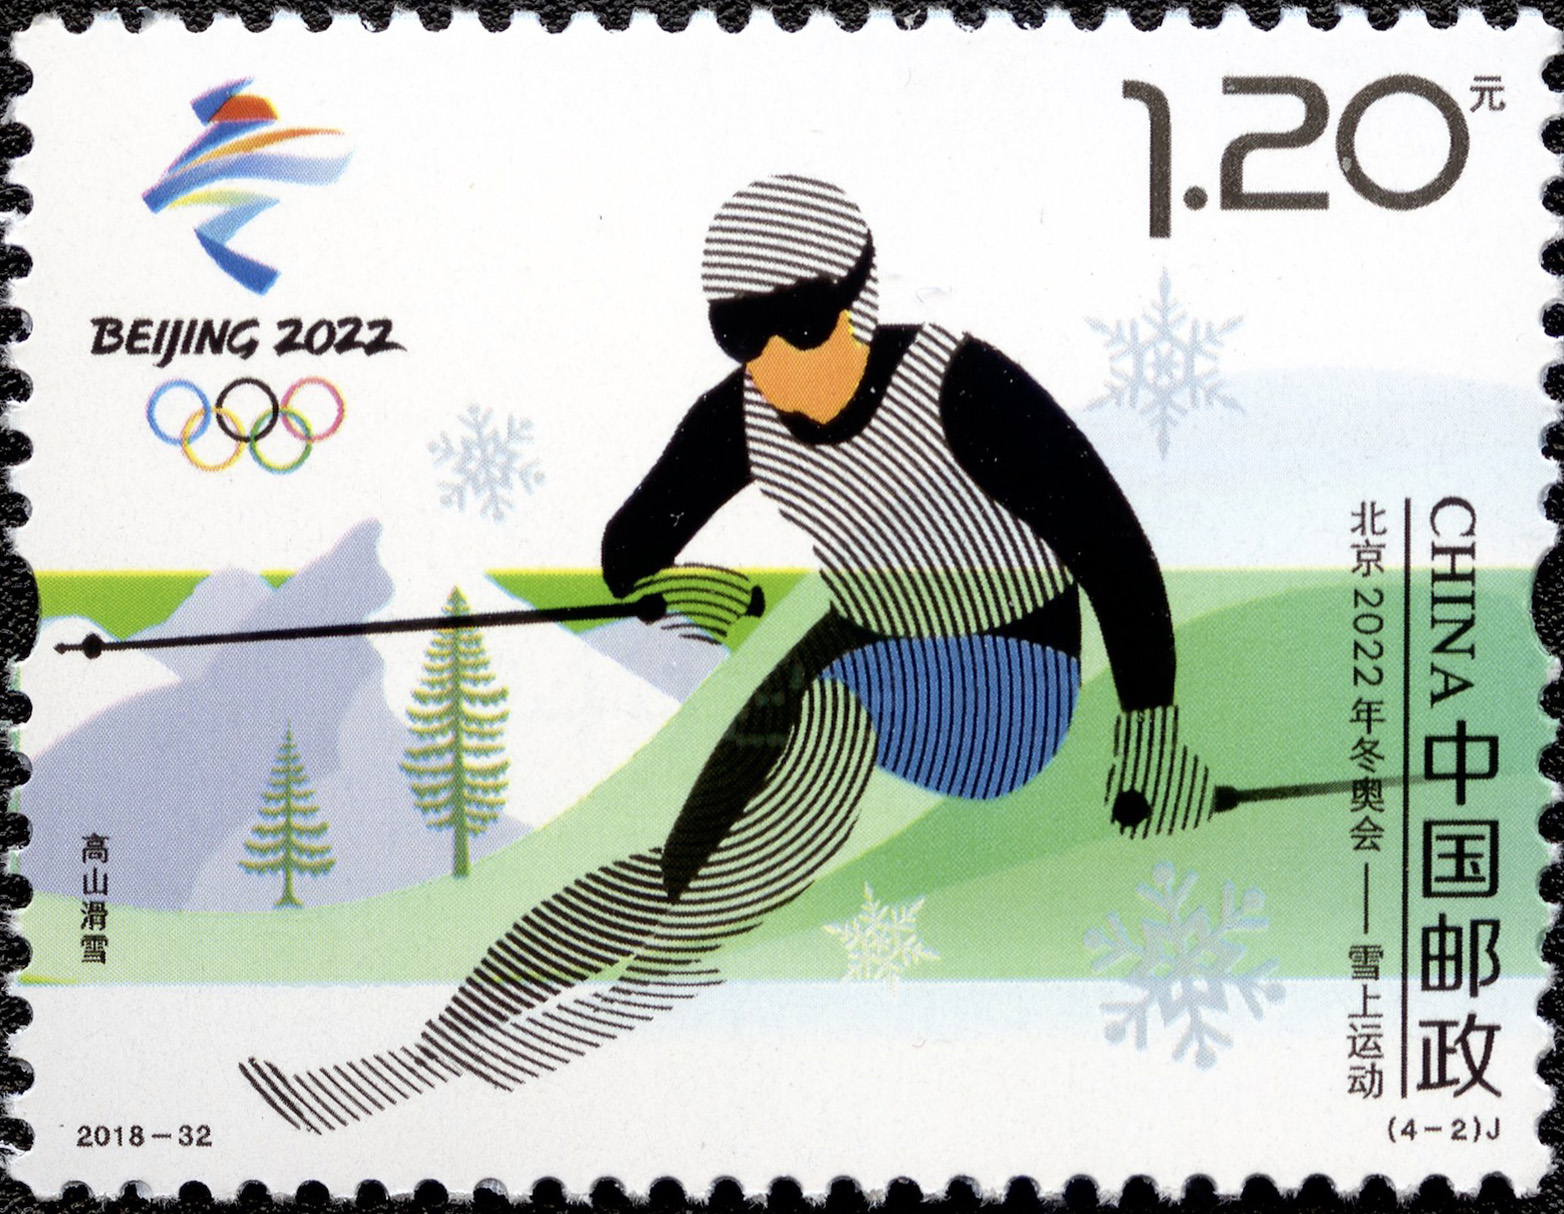 冬奥会邮票设计图片